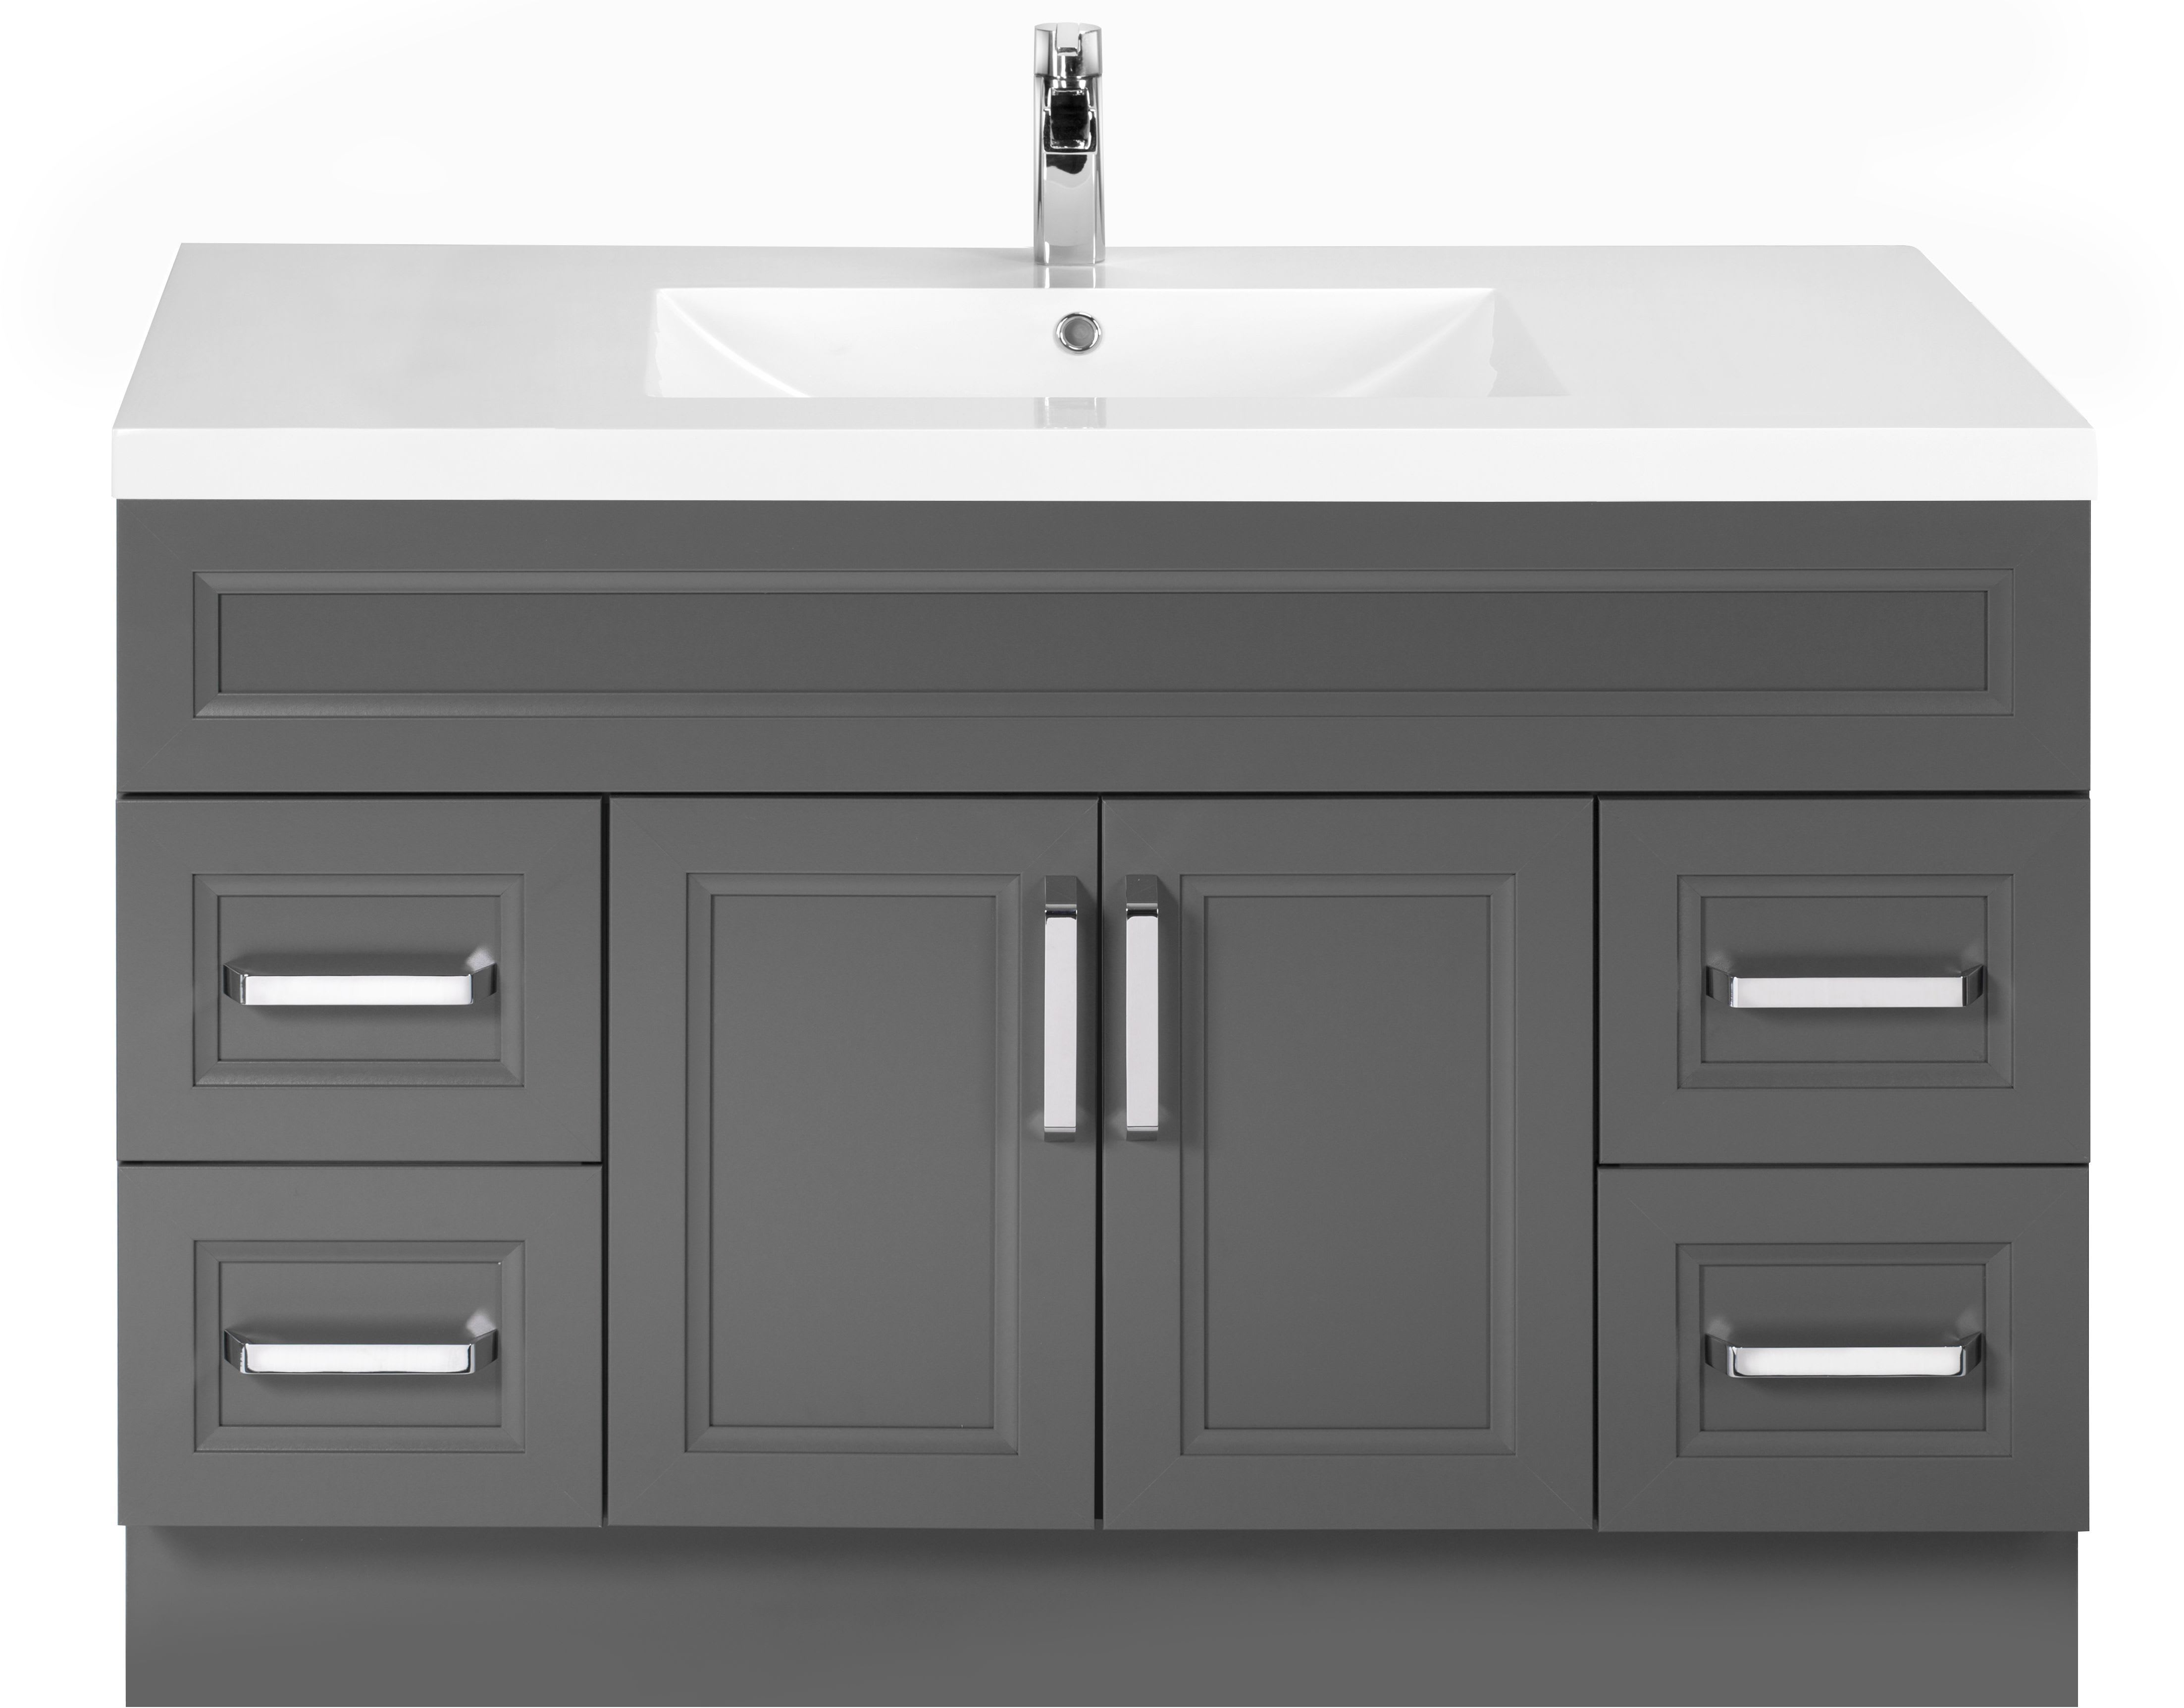 20 Wooden Free Standing Kitchen Sink Home Design Lover